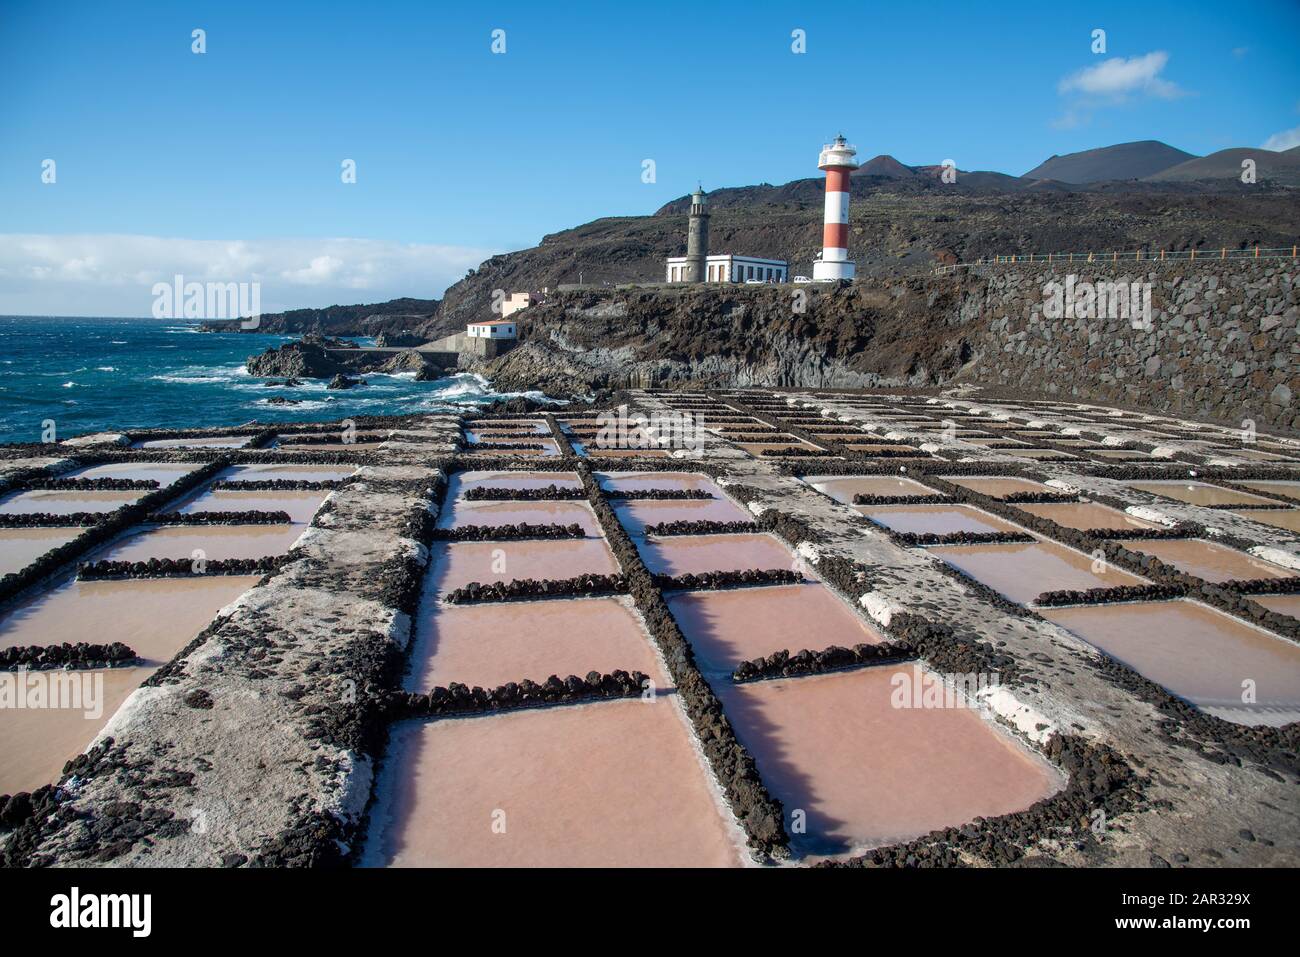 Salinas de Fuencaliente. Saltwinning at Fuencaliente at La Palma, Canary island, Spain Stock Photo